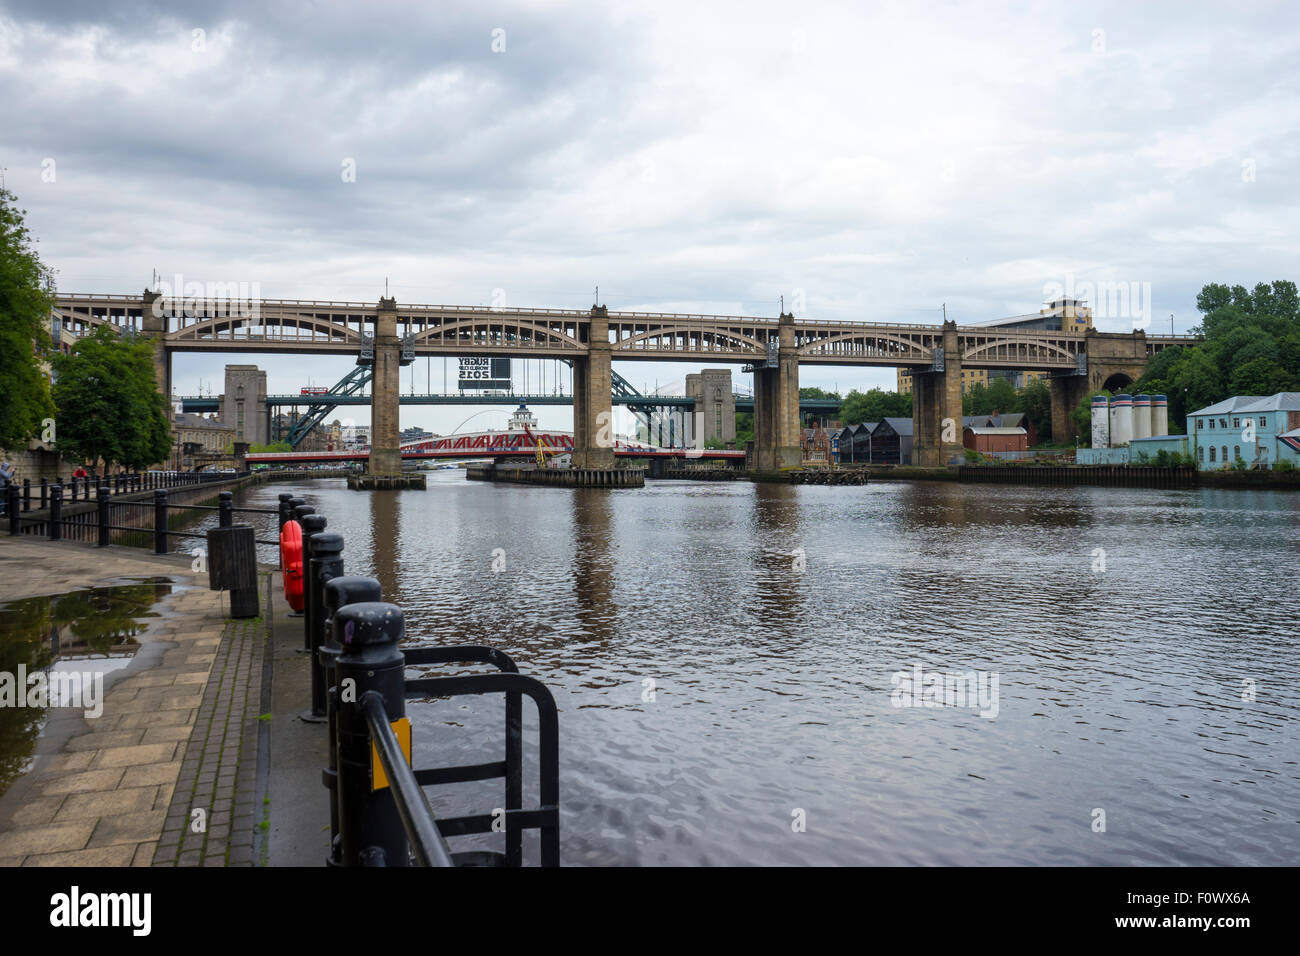 Le pont de haut niveau. Bus et train pont qui enjambe la rivière Tyne entre Newcastle upon Tyne et Gateshead. Banque D'Images